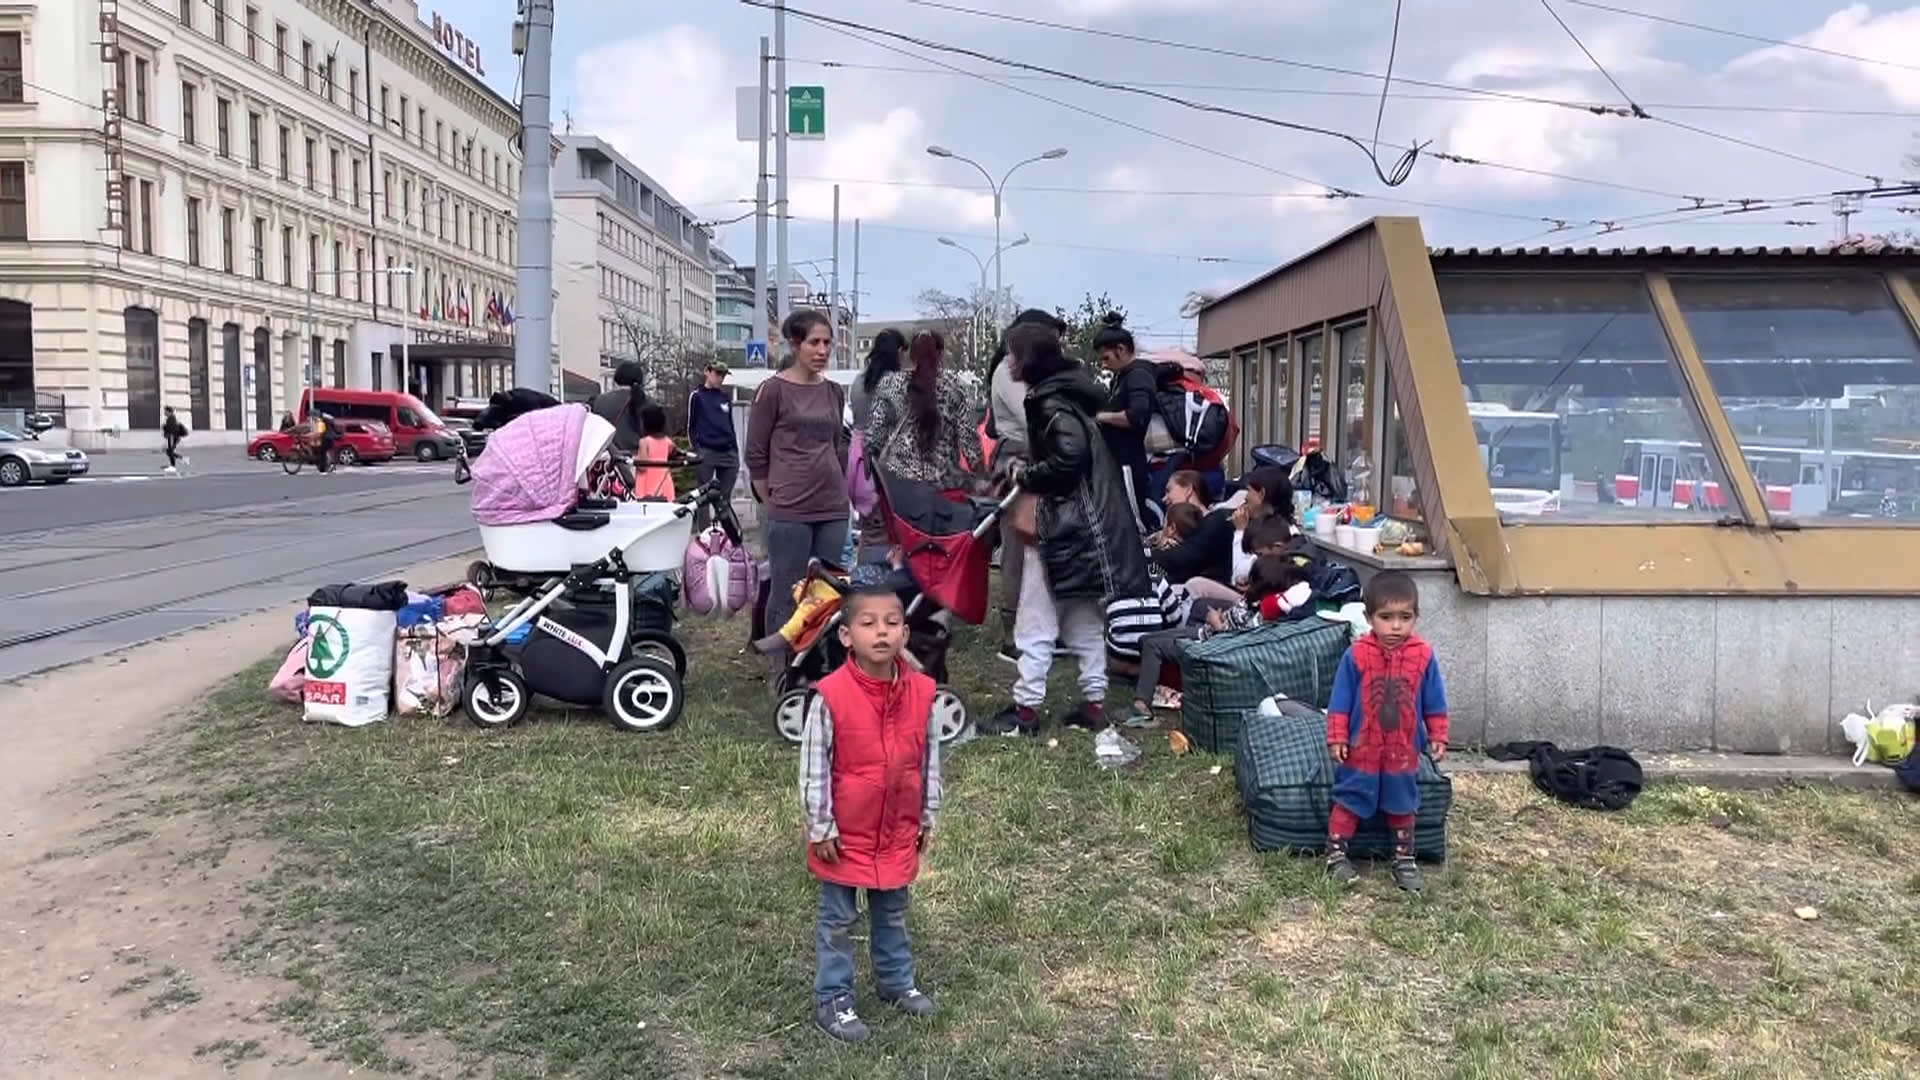 Desítky ukrajinských uprchlíků obsadily okolí hlavního nádraží v Brně.